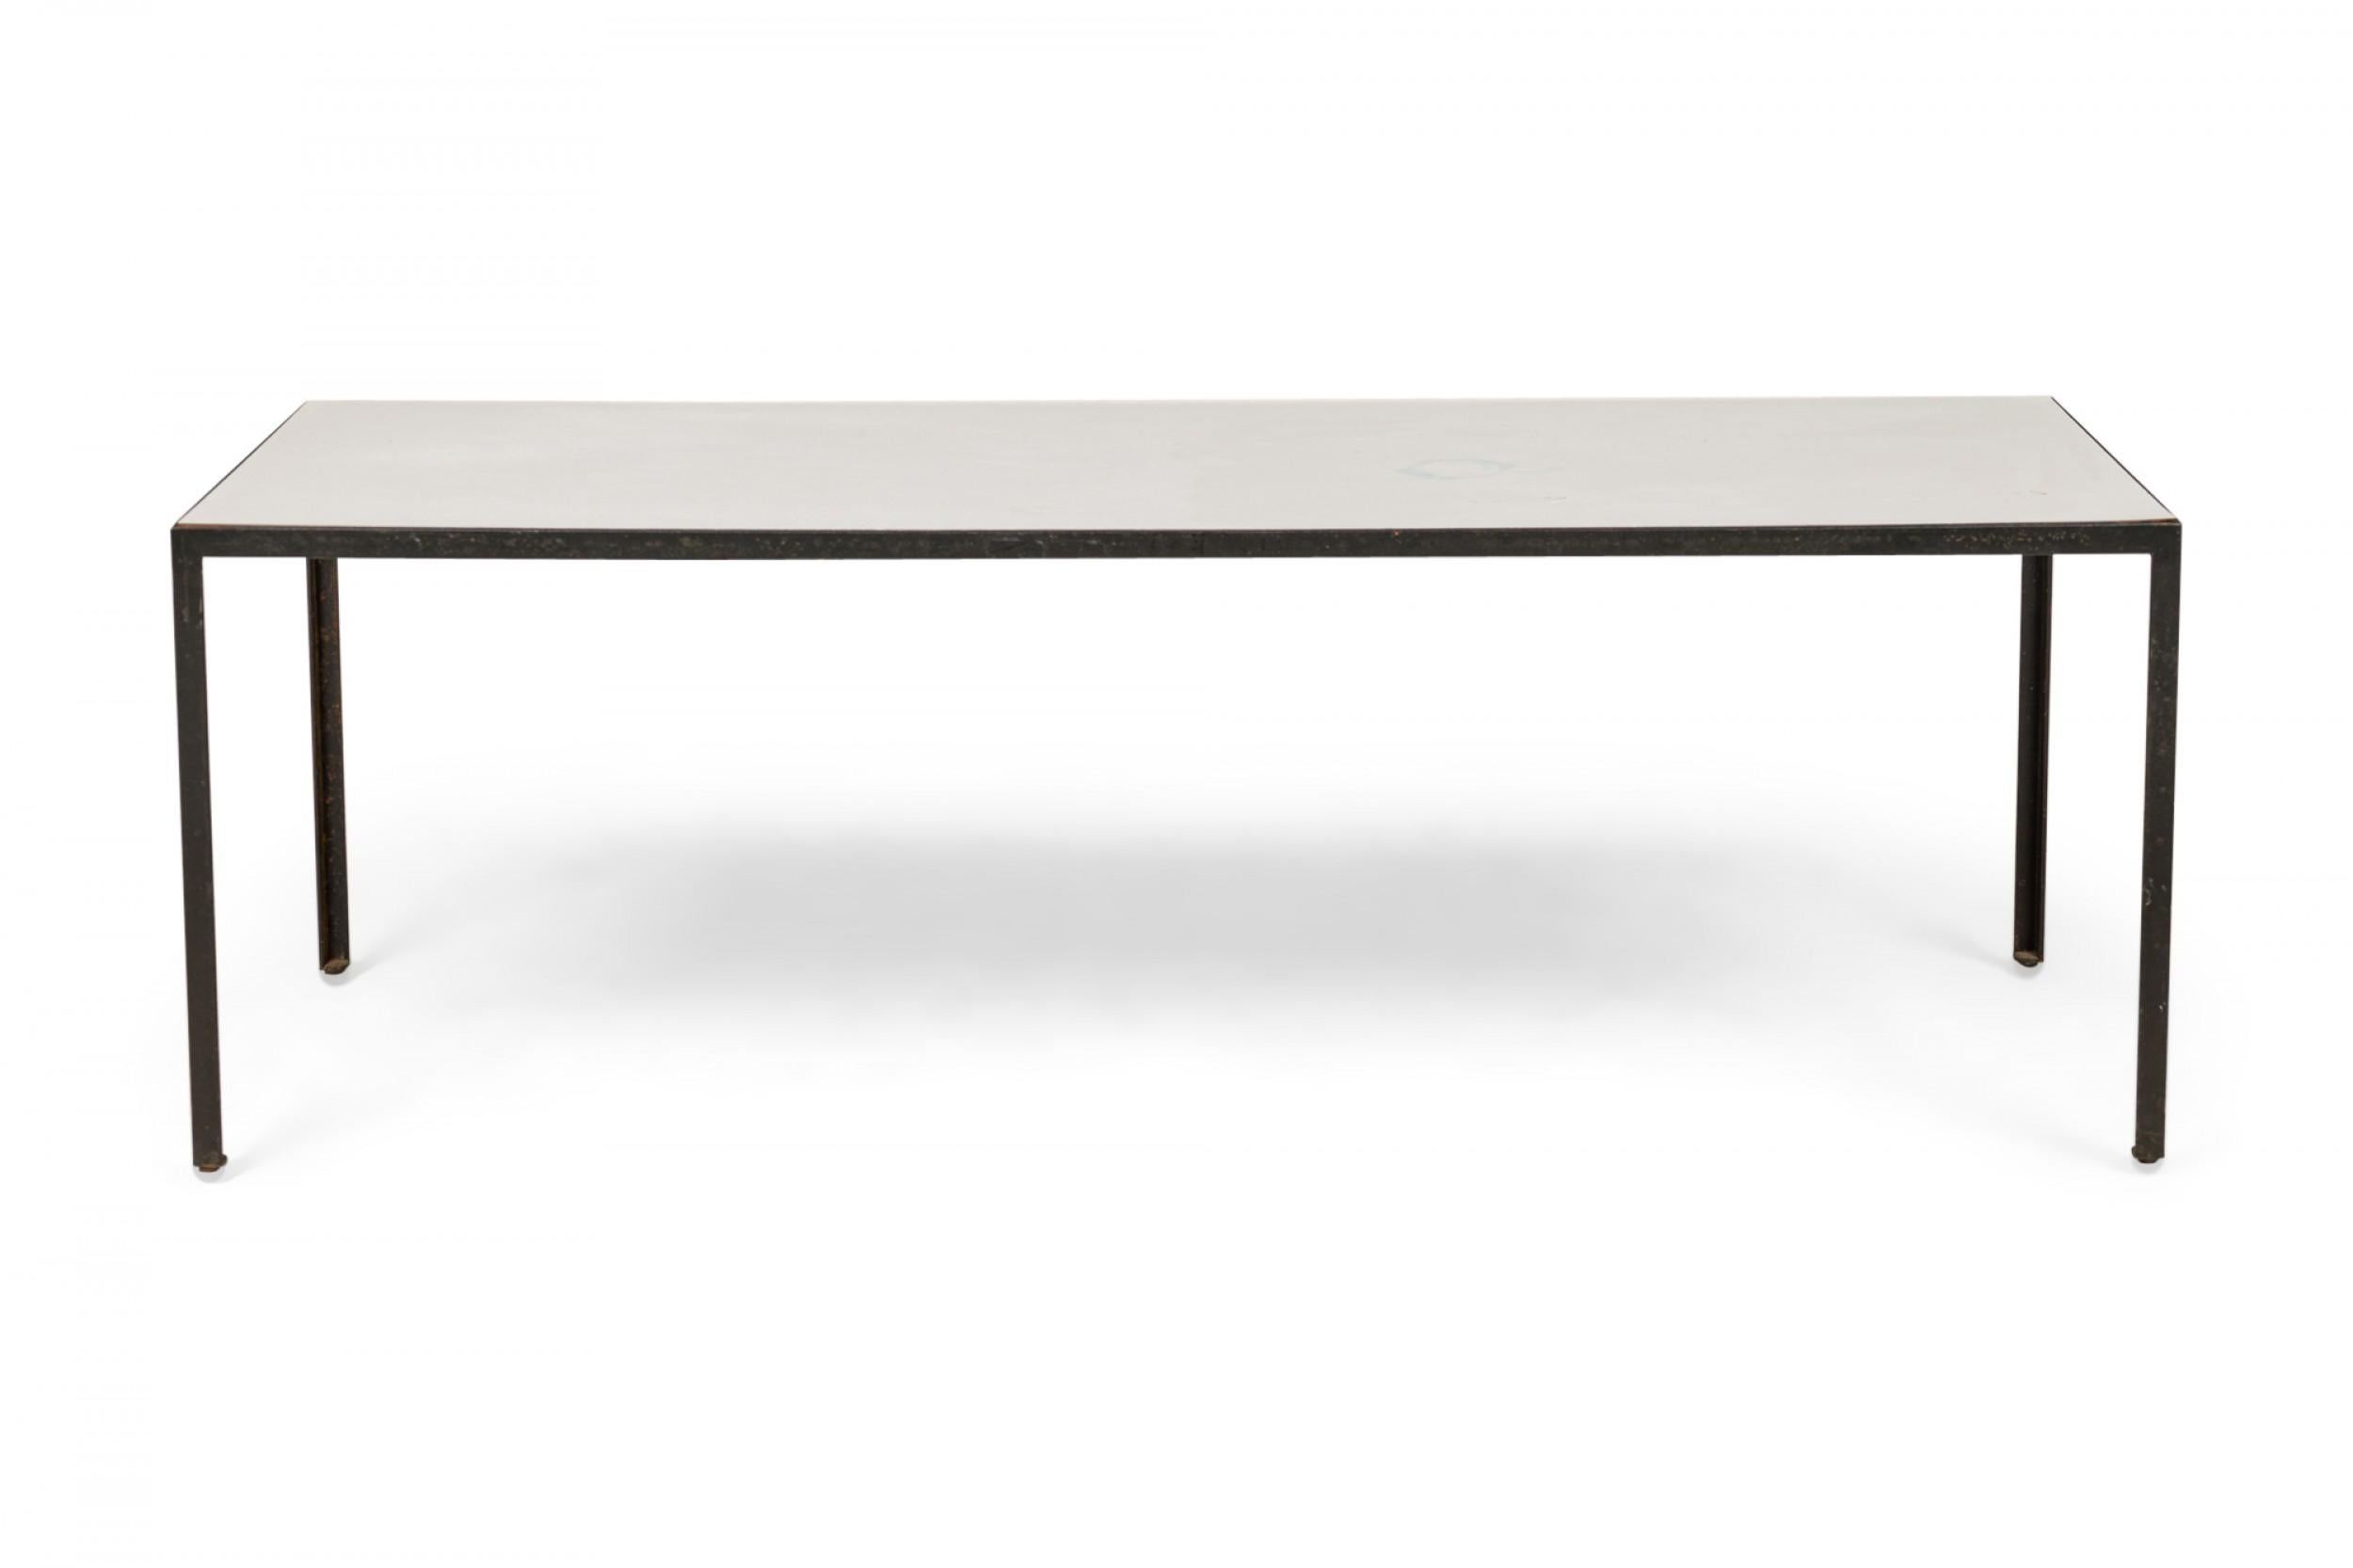 Rechteckiger amerikanischer Mid-Century-Couch-/Cocktailtisch mit weißer Laminatplatte, die auf einem minimalistischen schwarzen Stahlsockel ruht. (GEORGE NELSON / HERMAN MILLER)
